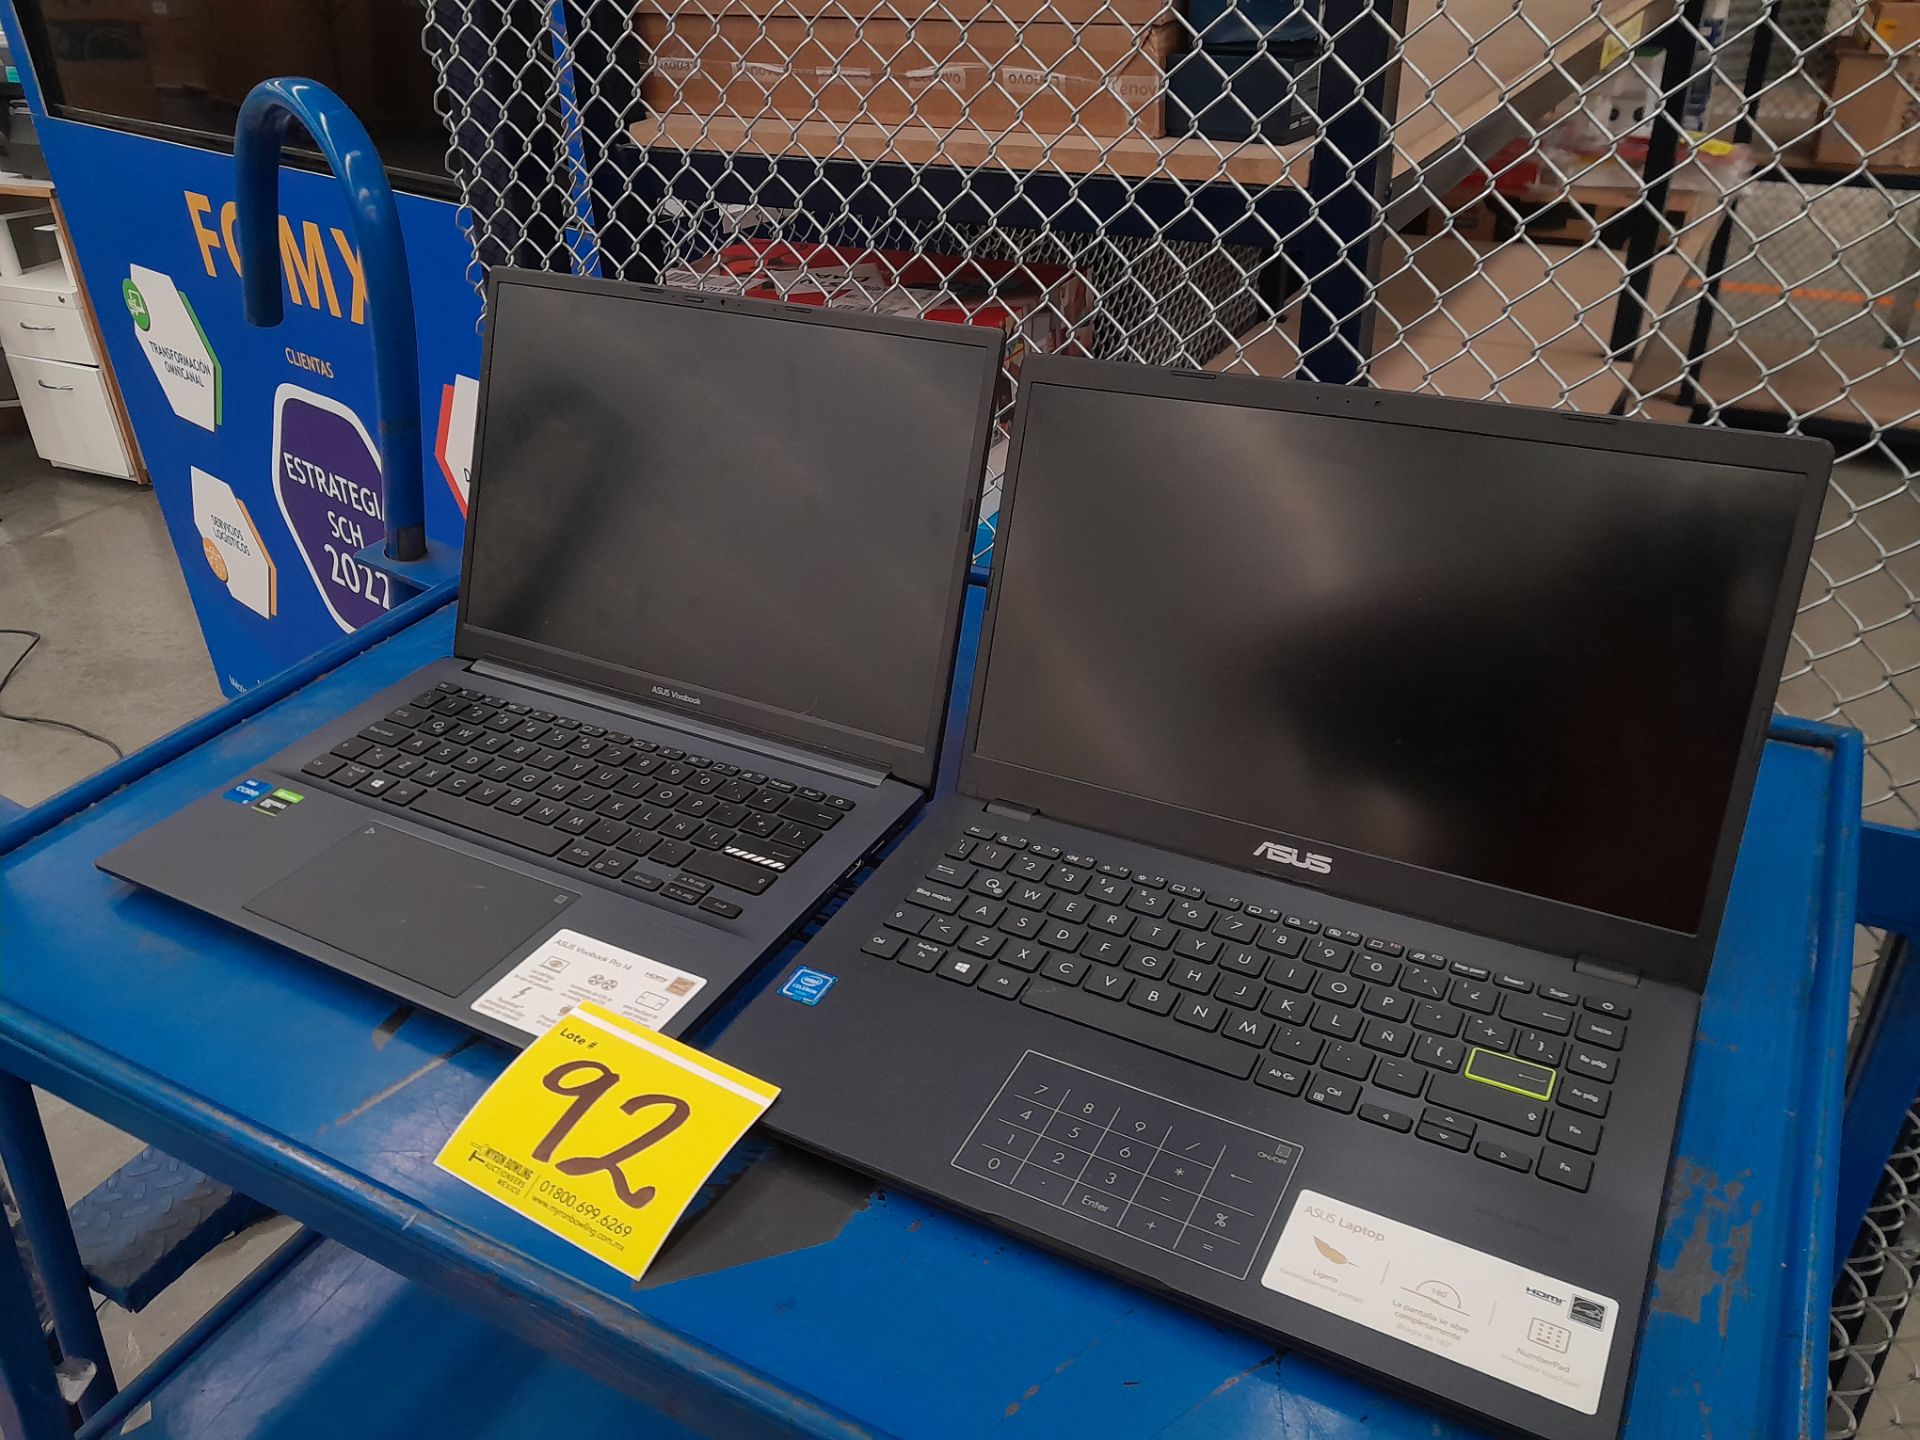 Lote de 2 laptops contiene: 1 Laptop Marca ASUS, Modelo R429M, Serie 192032, Color GRIS, Procesador - Image 2 of 5